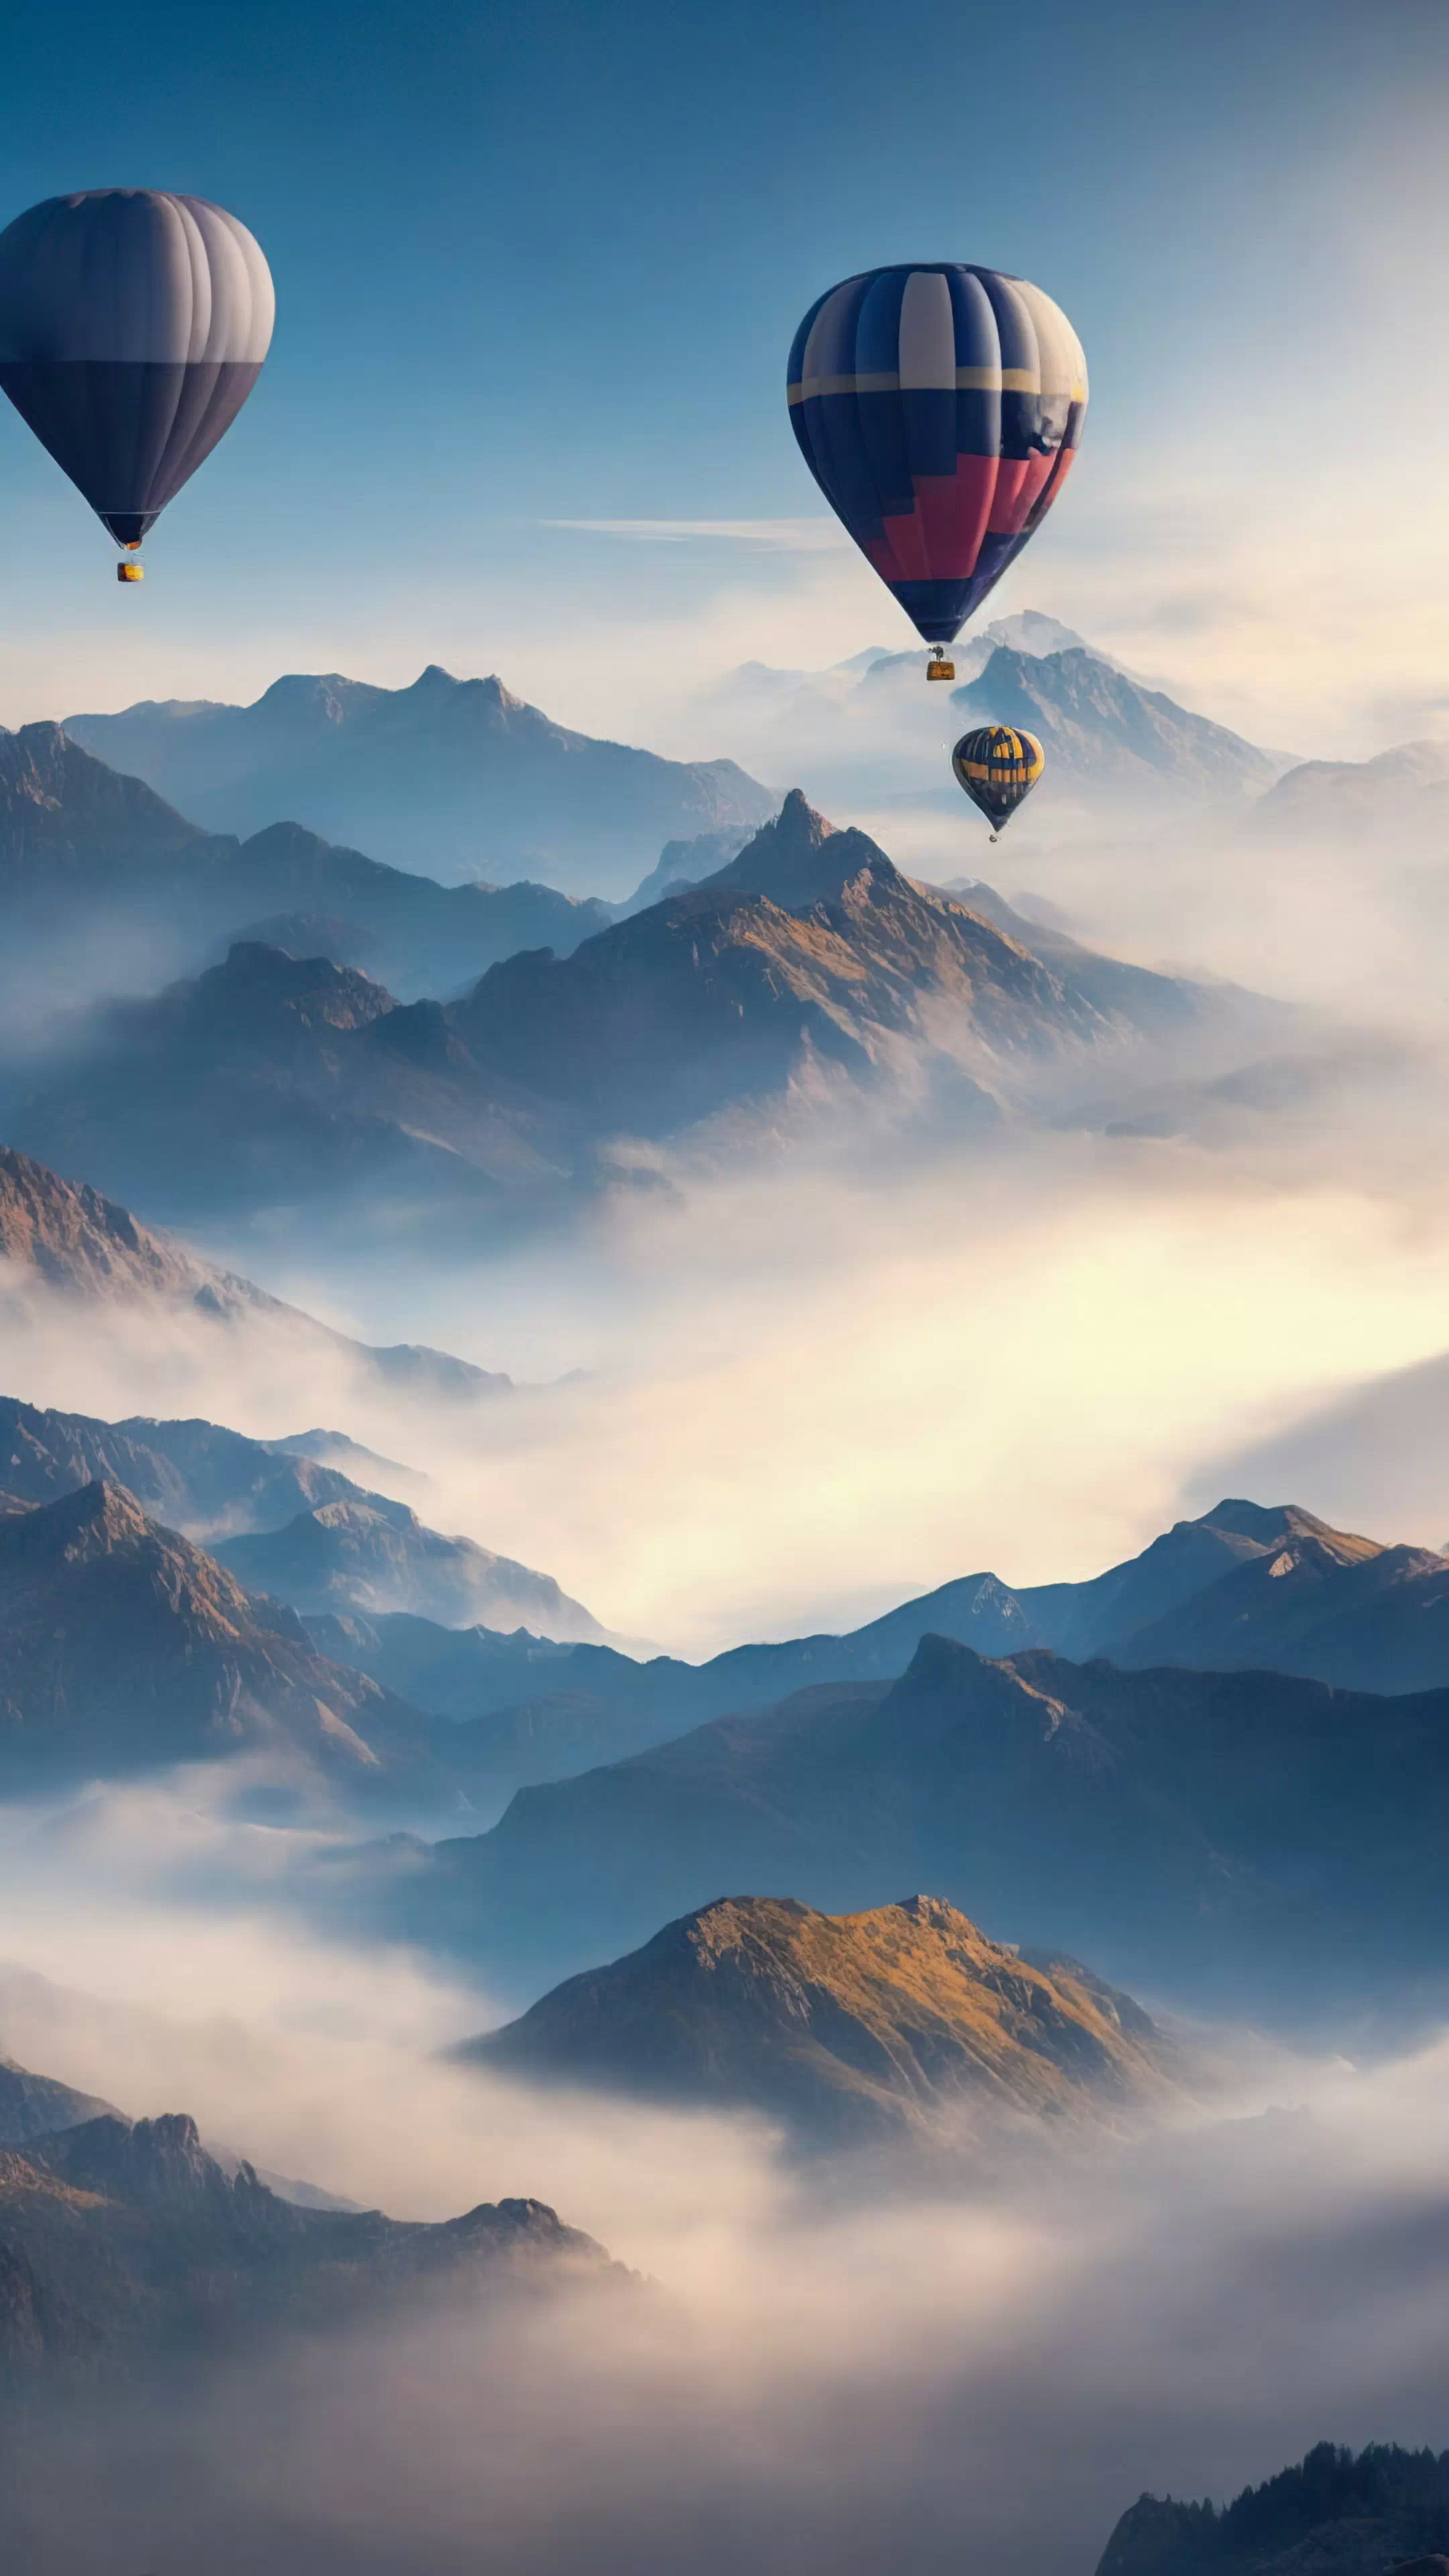 Apportez la beauté des cieux à votre téléphone avec notre fond d'écran nature HD, capturant un ciel surréaliste rempli de montgolfières survolant un paysage montagneux, et laissez votre appareil devenir une fenêtre sur un monde de fantaisie.